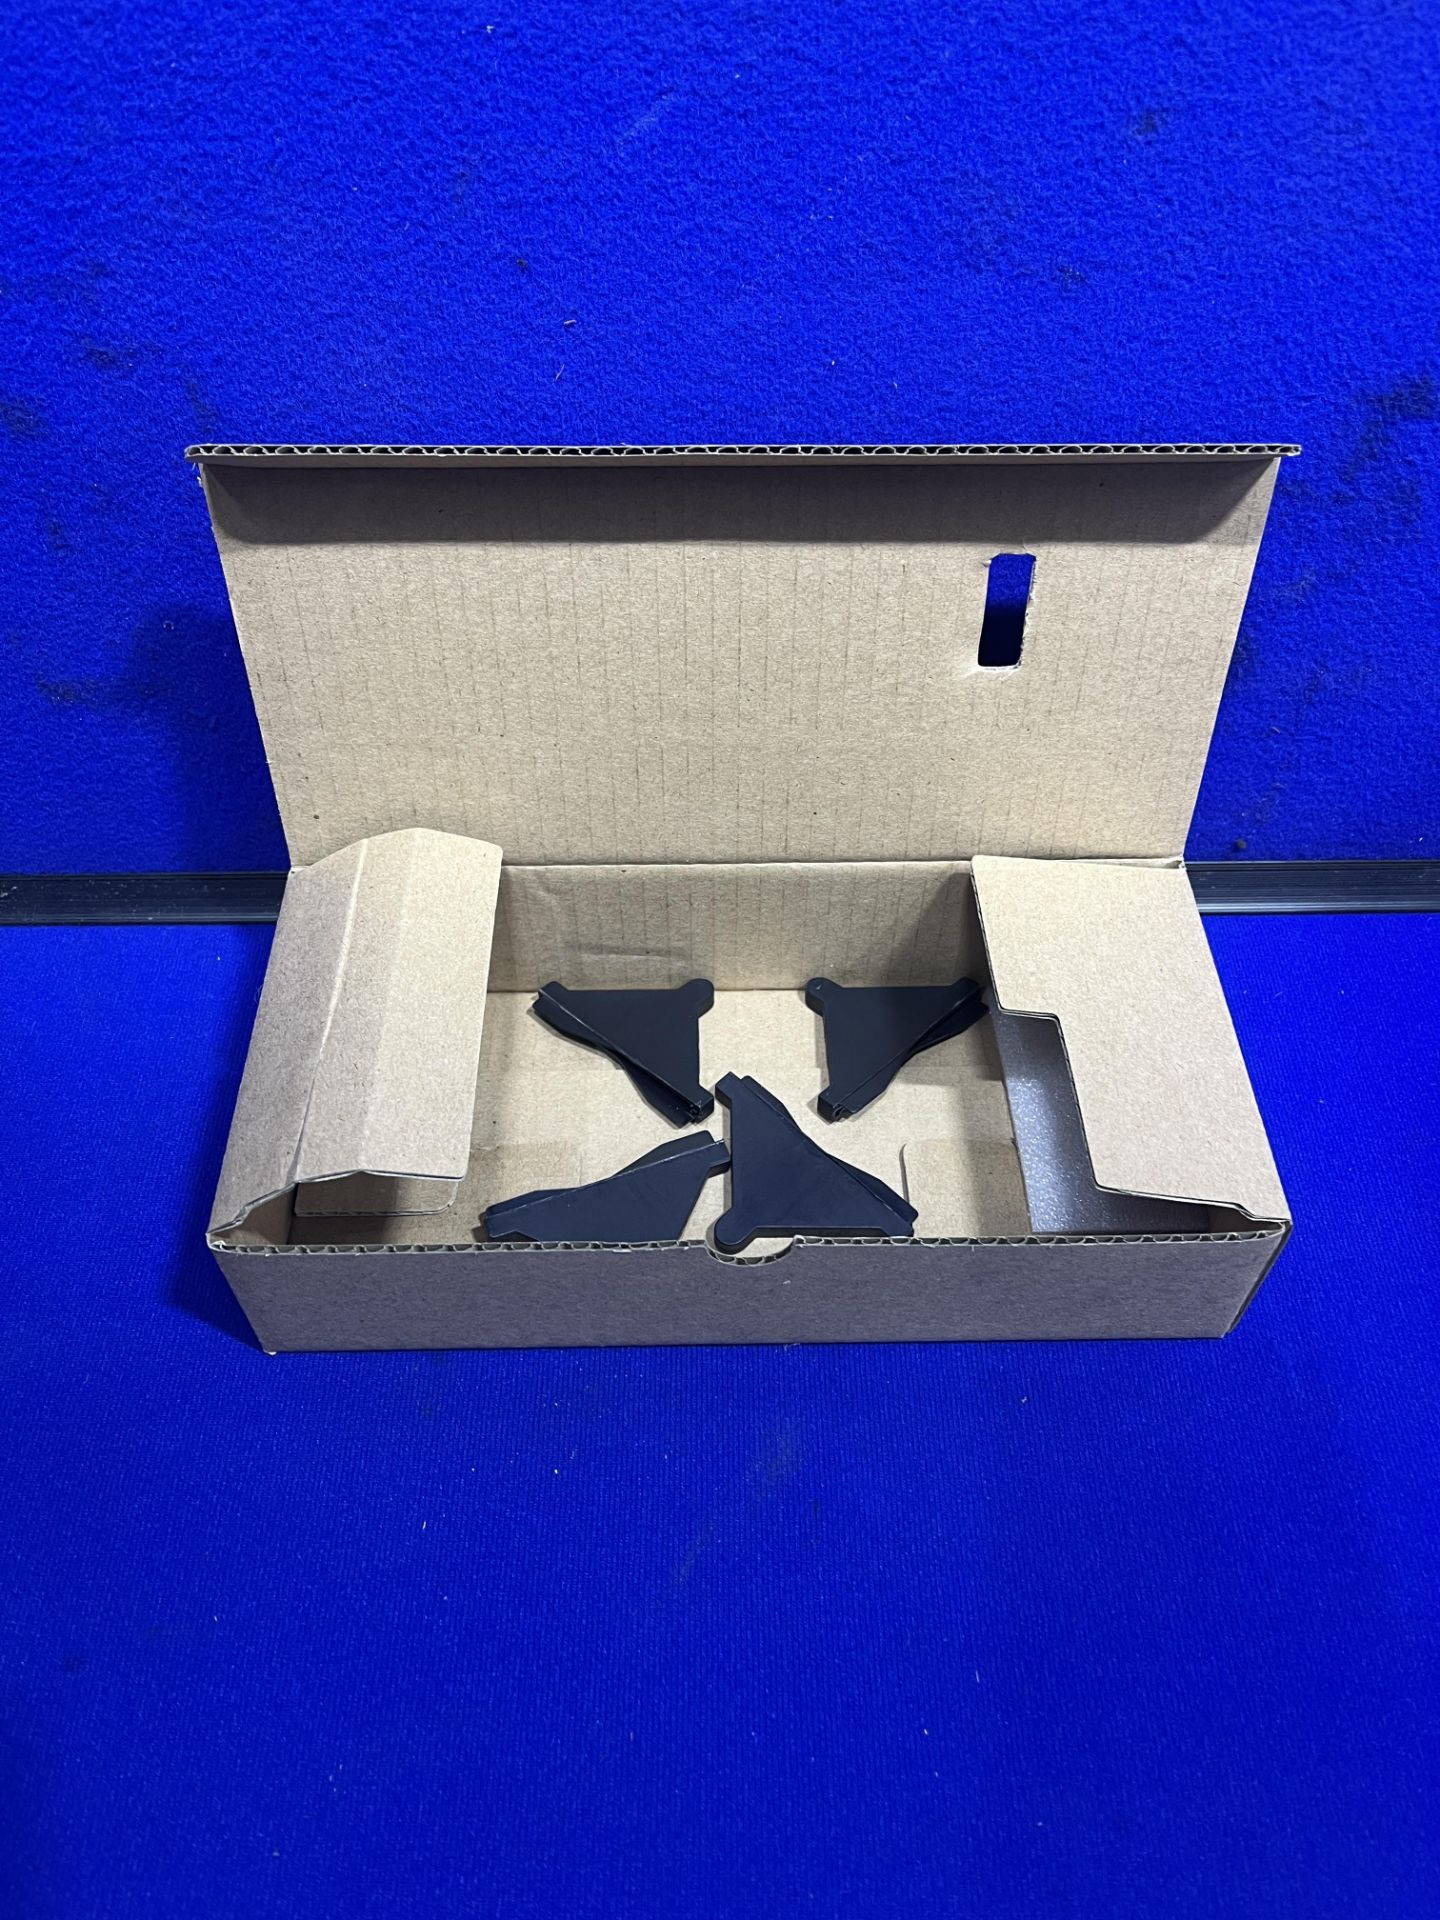 12 x Utimaker 3D Printer Accessory Box - Image 7 of 8